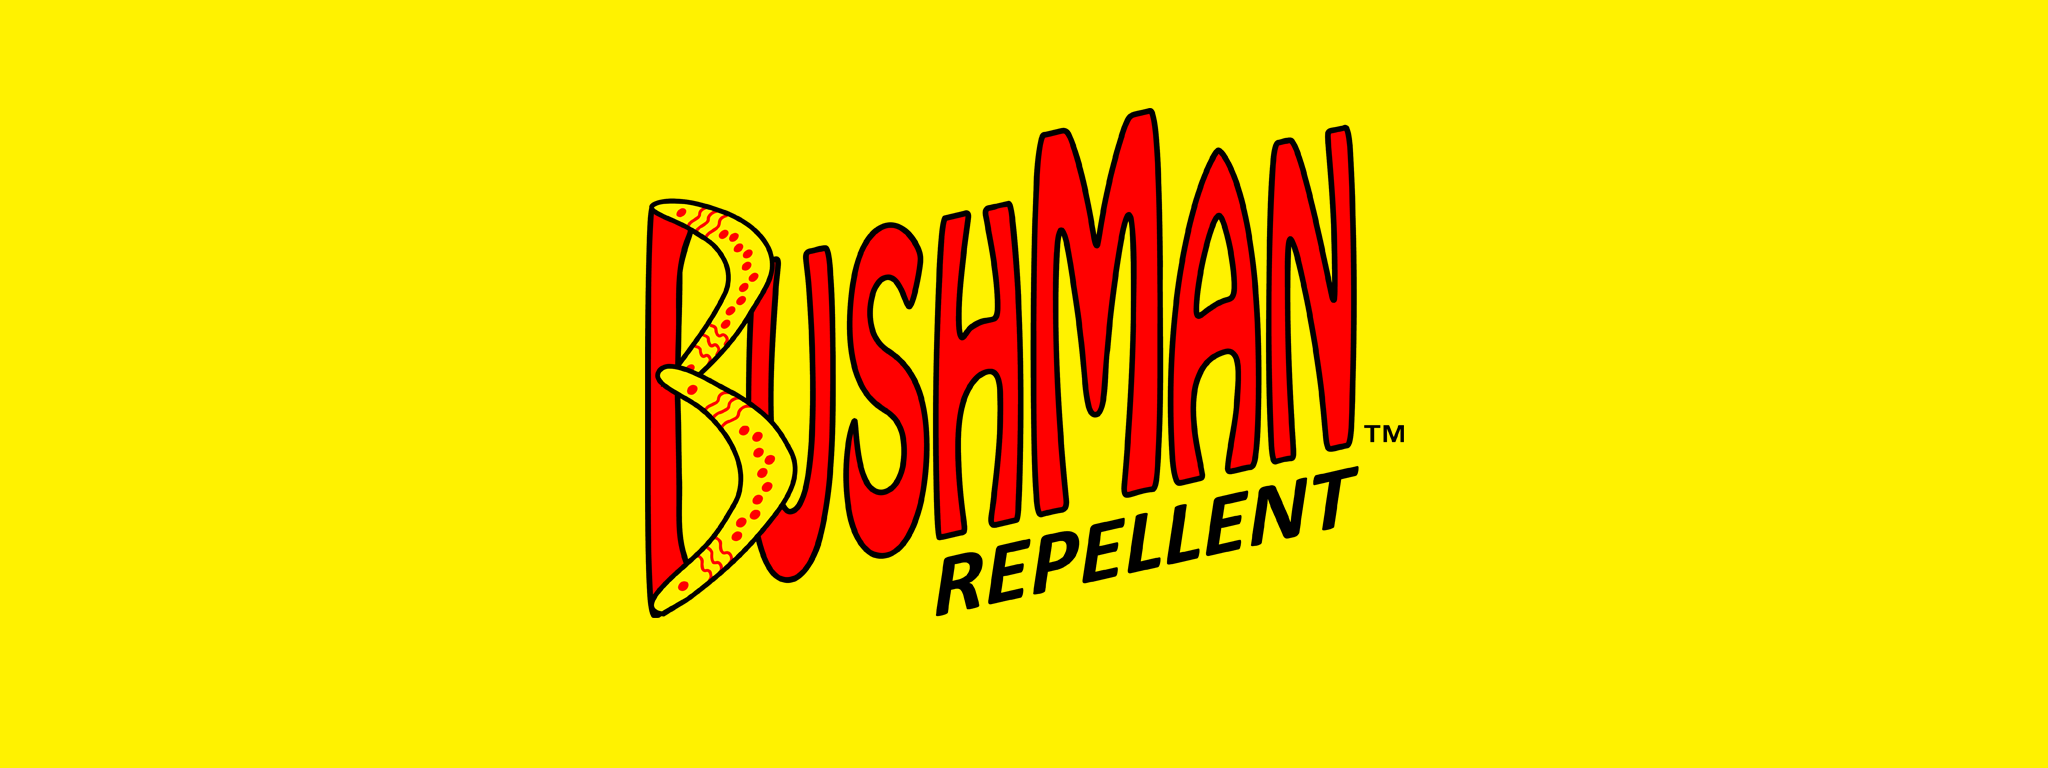 Bushman Banner